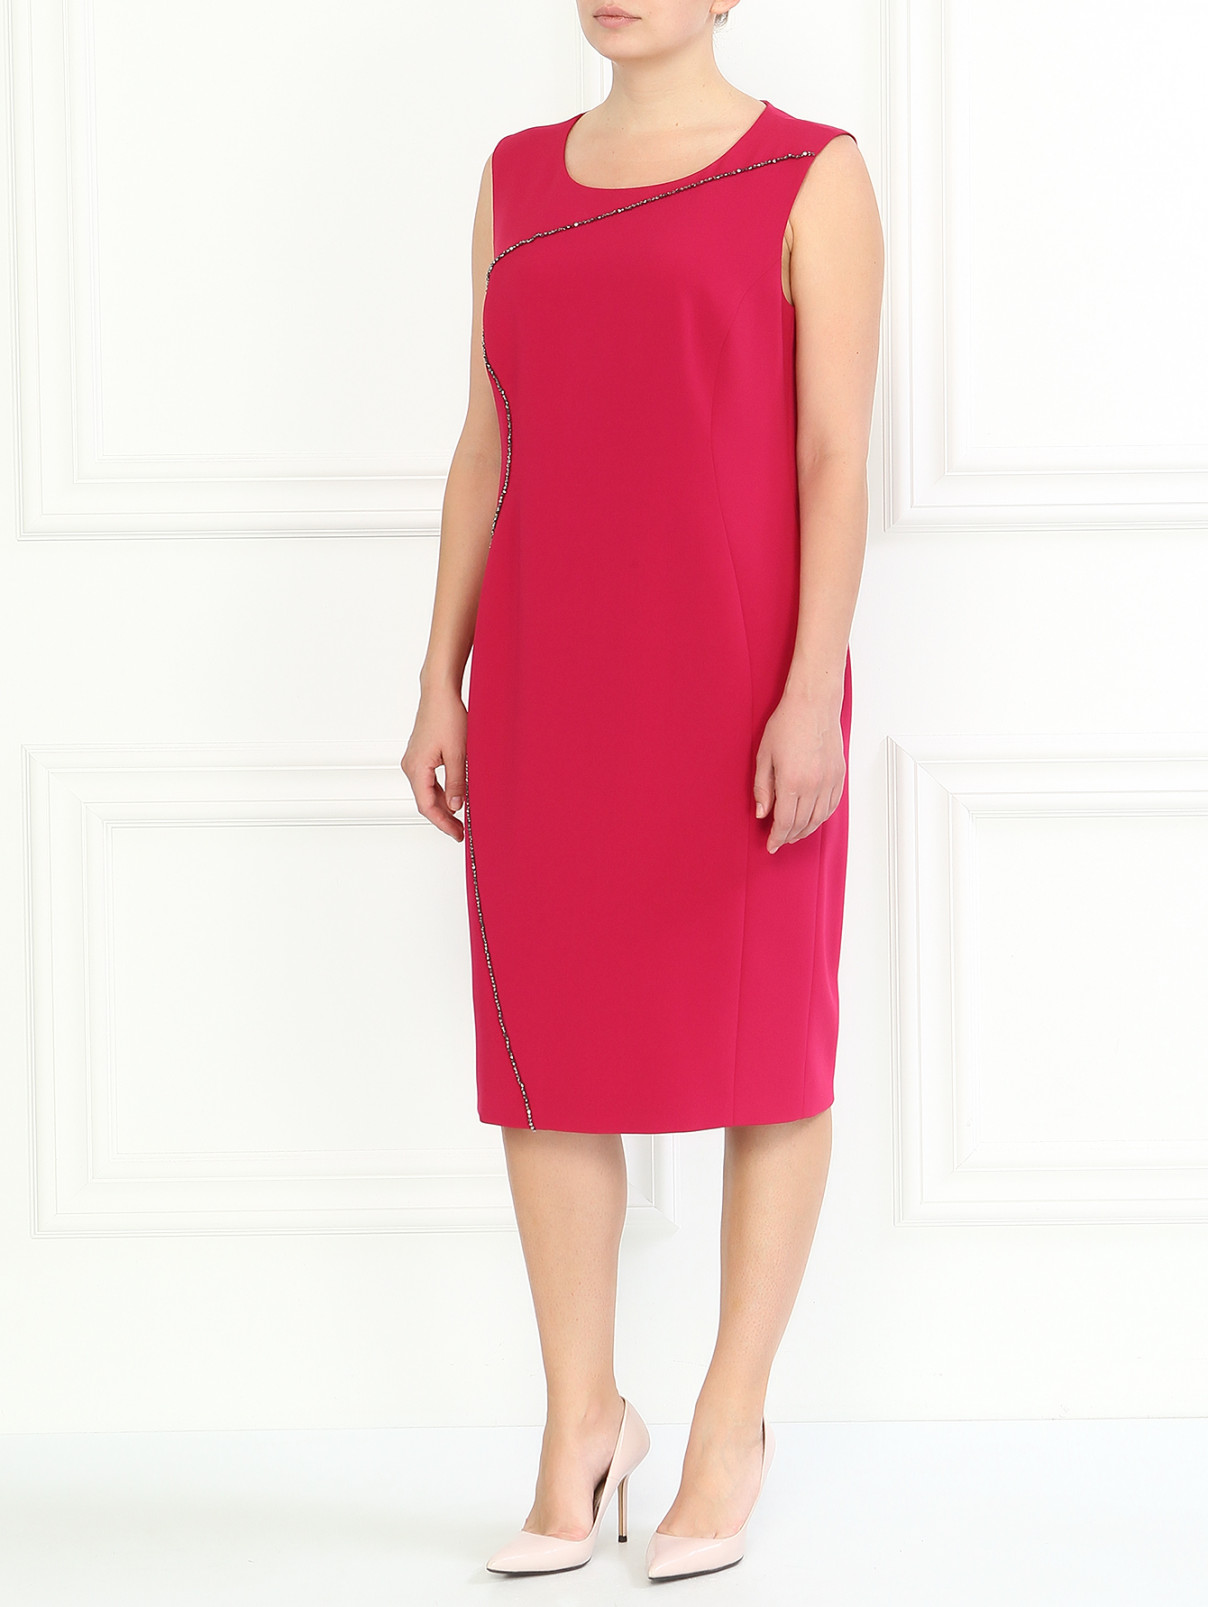 Платье декорированное бисером Marina Rinaldi  –  Модель Общий вид  – Цвет:  Фиолетовый